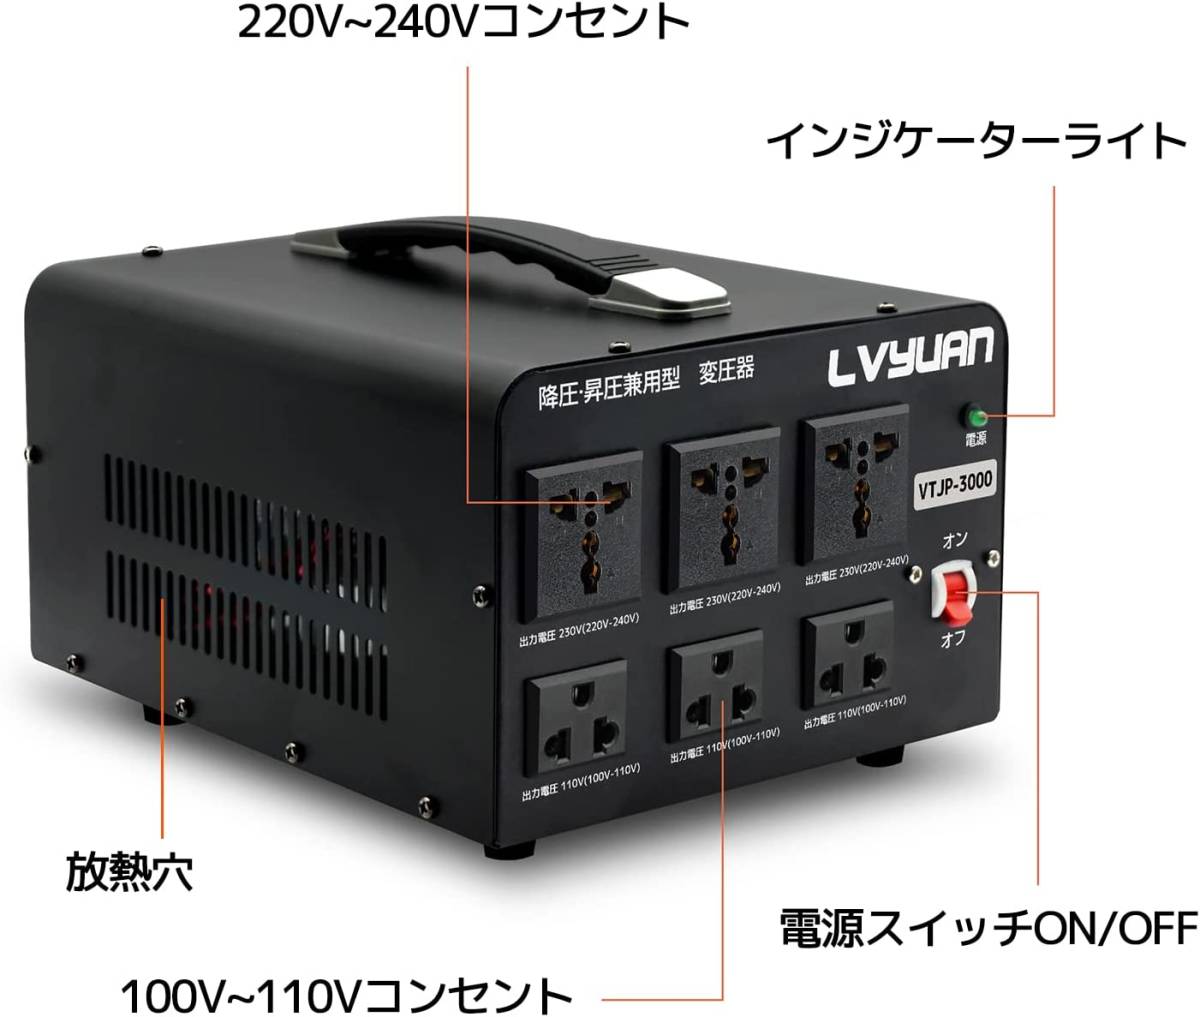 新品 両用型変圧器 降圧・昇圧 変圧器 3000W 100V/110V-220V/240V アップトランス ダウントランス 海外機器 ポータブルトランス LVYUAN_画像2